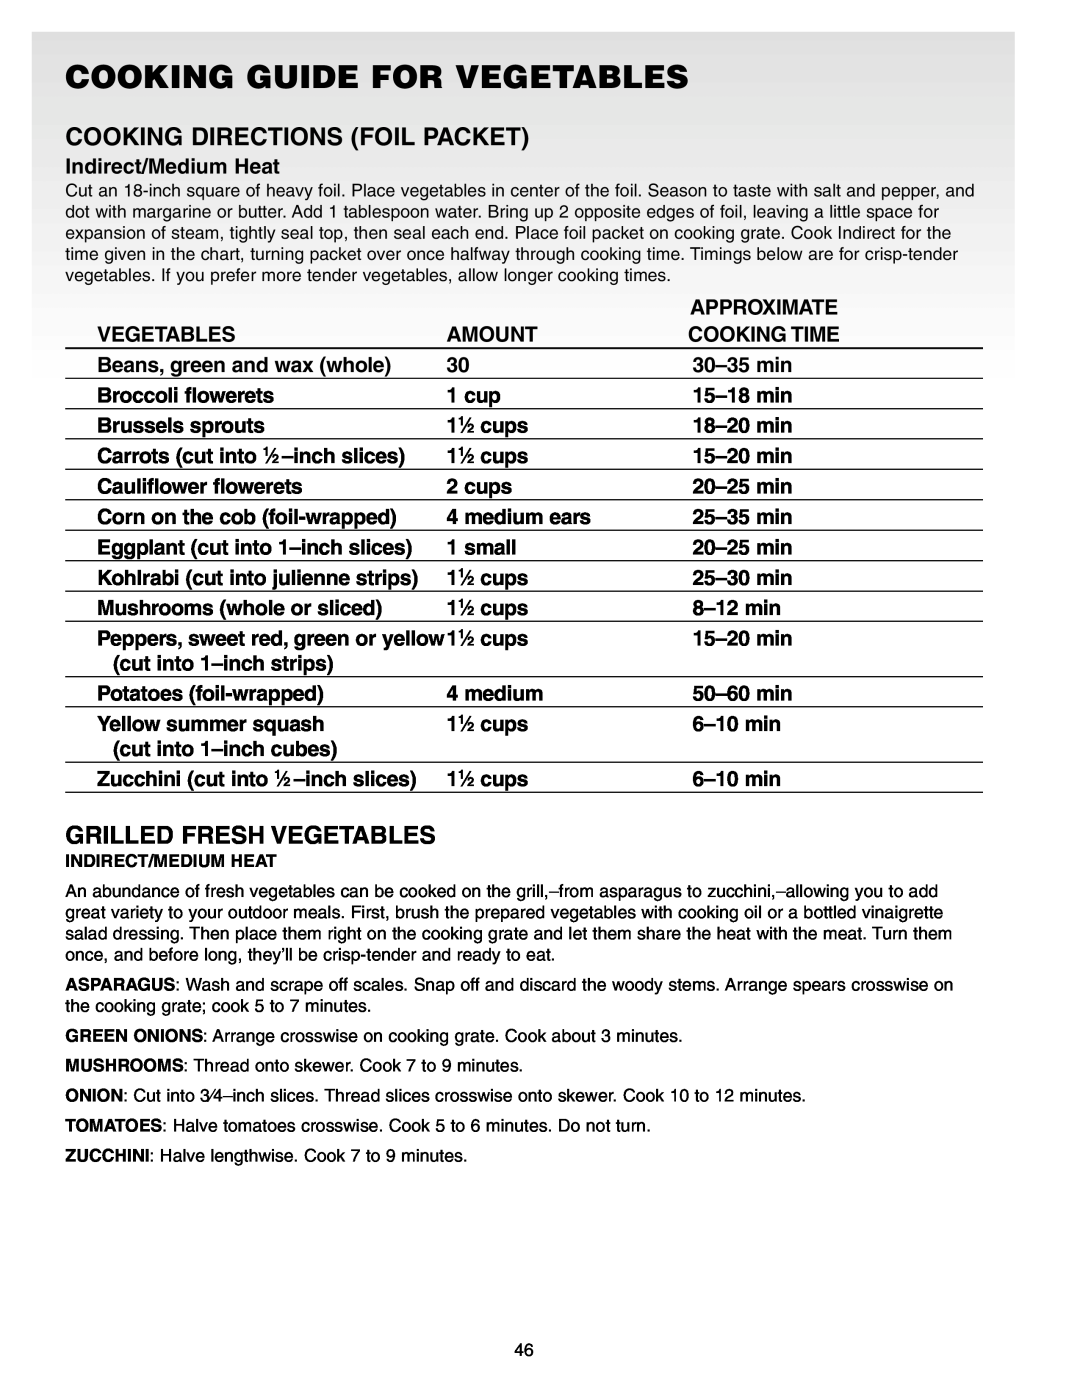 Weber Gas Burner manual Cooking Guide For Vegetables, Cooking Directions Foil Packet, Grilled Fresh Vegetables 